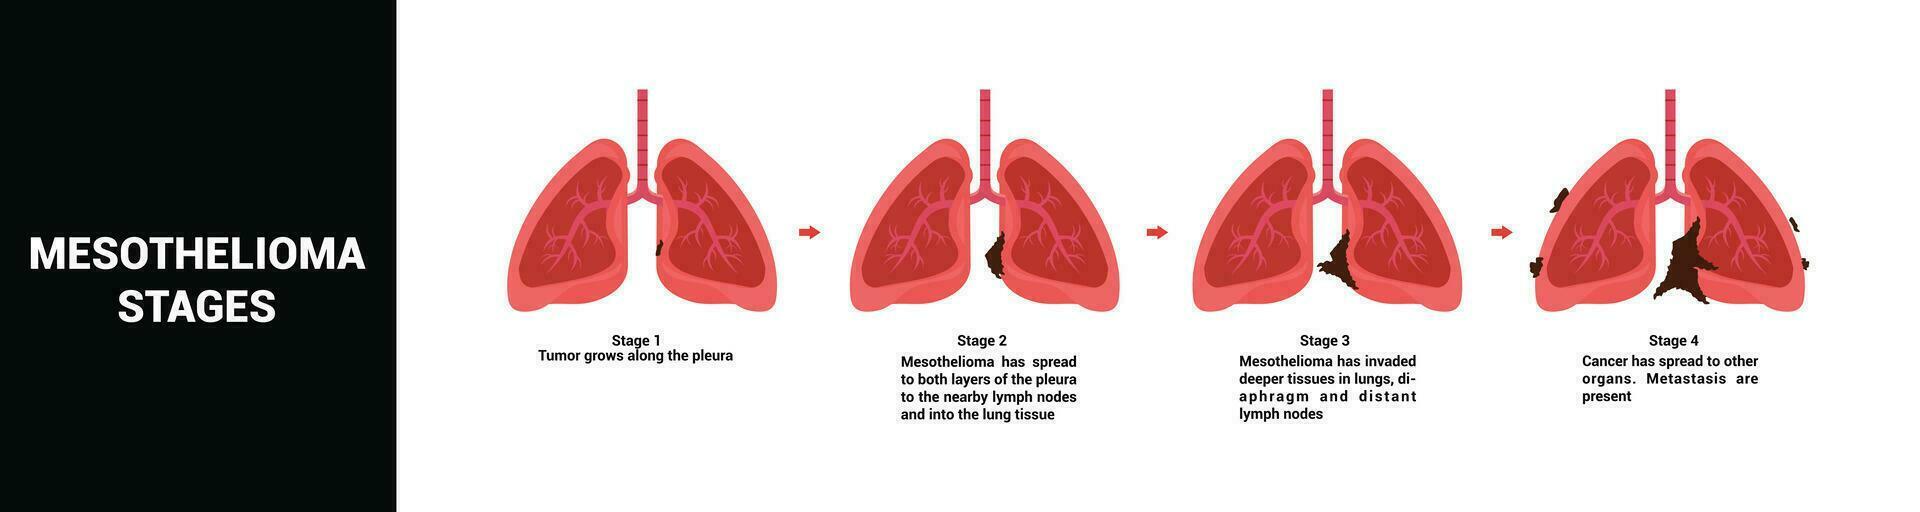 mesotelioma cáncer etapas vector ilustración